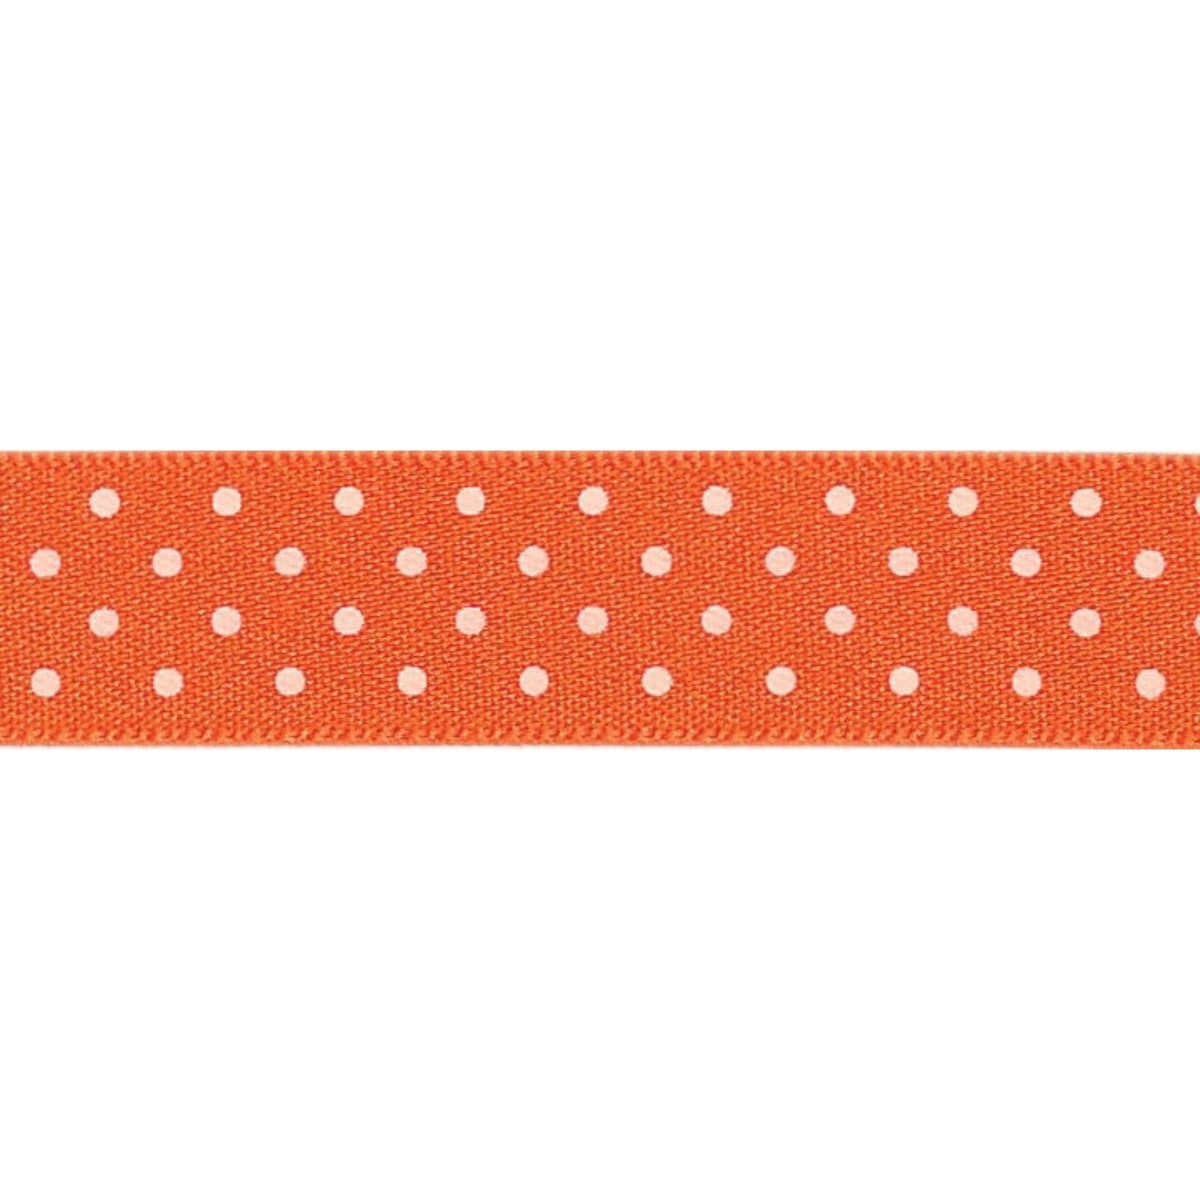 Micro Dot Ribbon: Orange delight and white: 15mm wide: Price per metre.